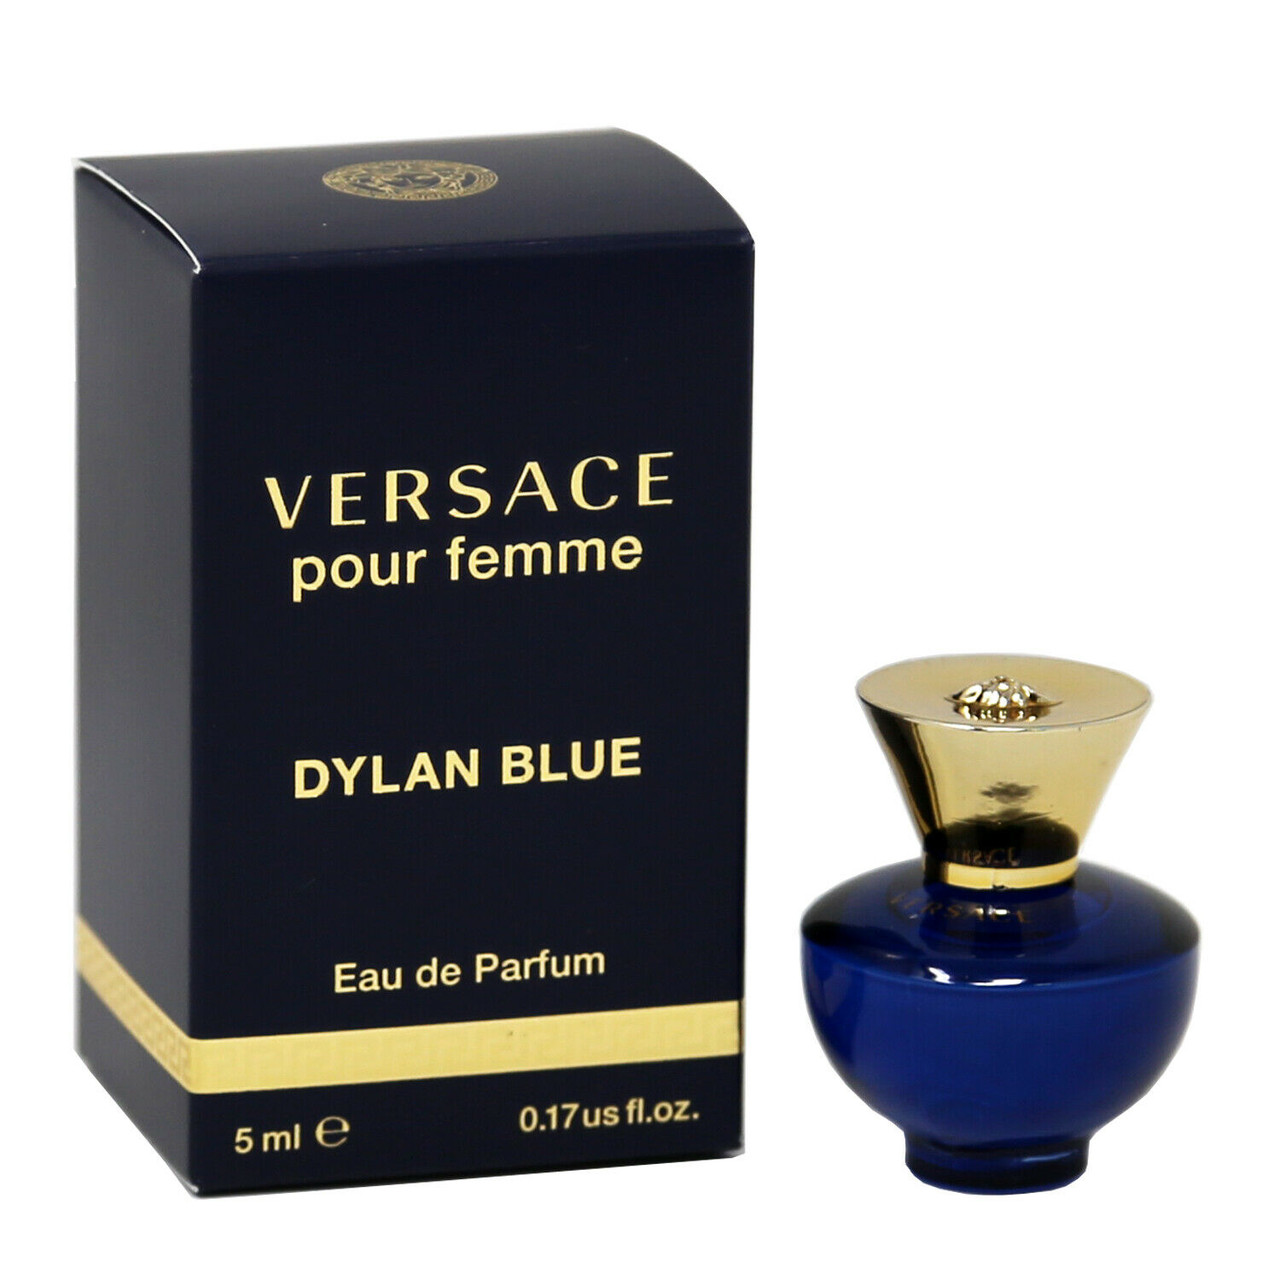 Versace Pour Homme Dylan Blue by Versace Gift Set -- 3.4 oz Eau de Toi -  Redbagstores